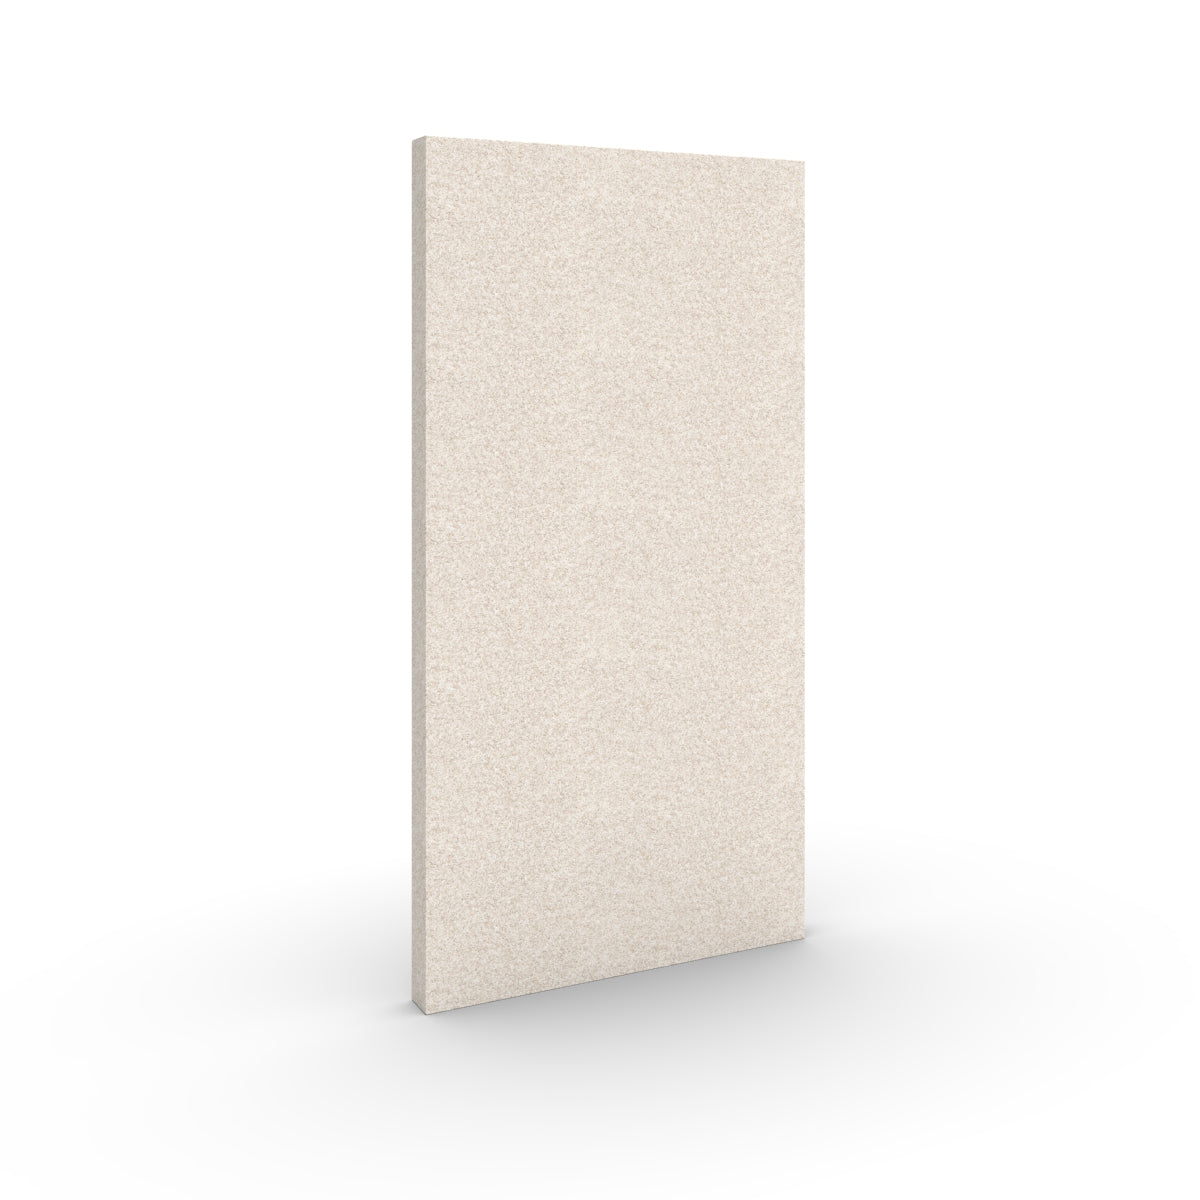 Basic wall sound absorber in natural beige. Size 58cmx116cm. Akustikkplater og lyddemping vegg